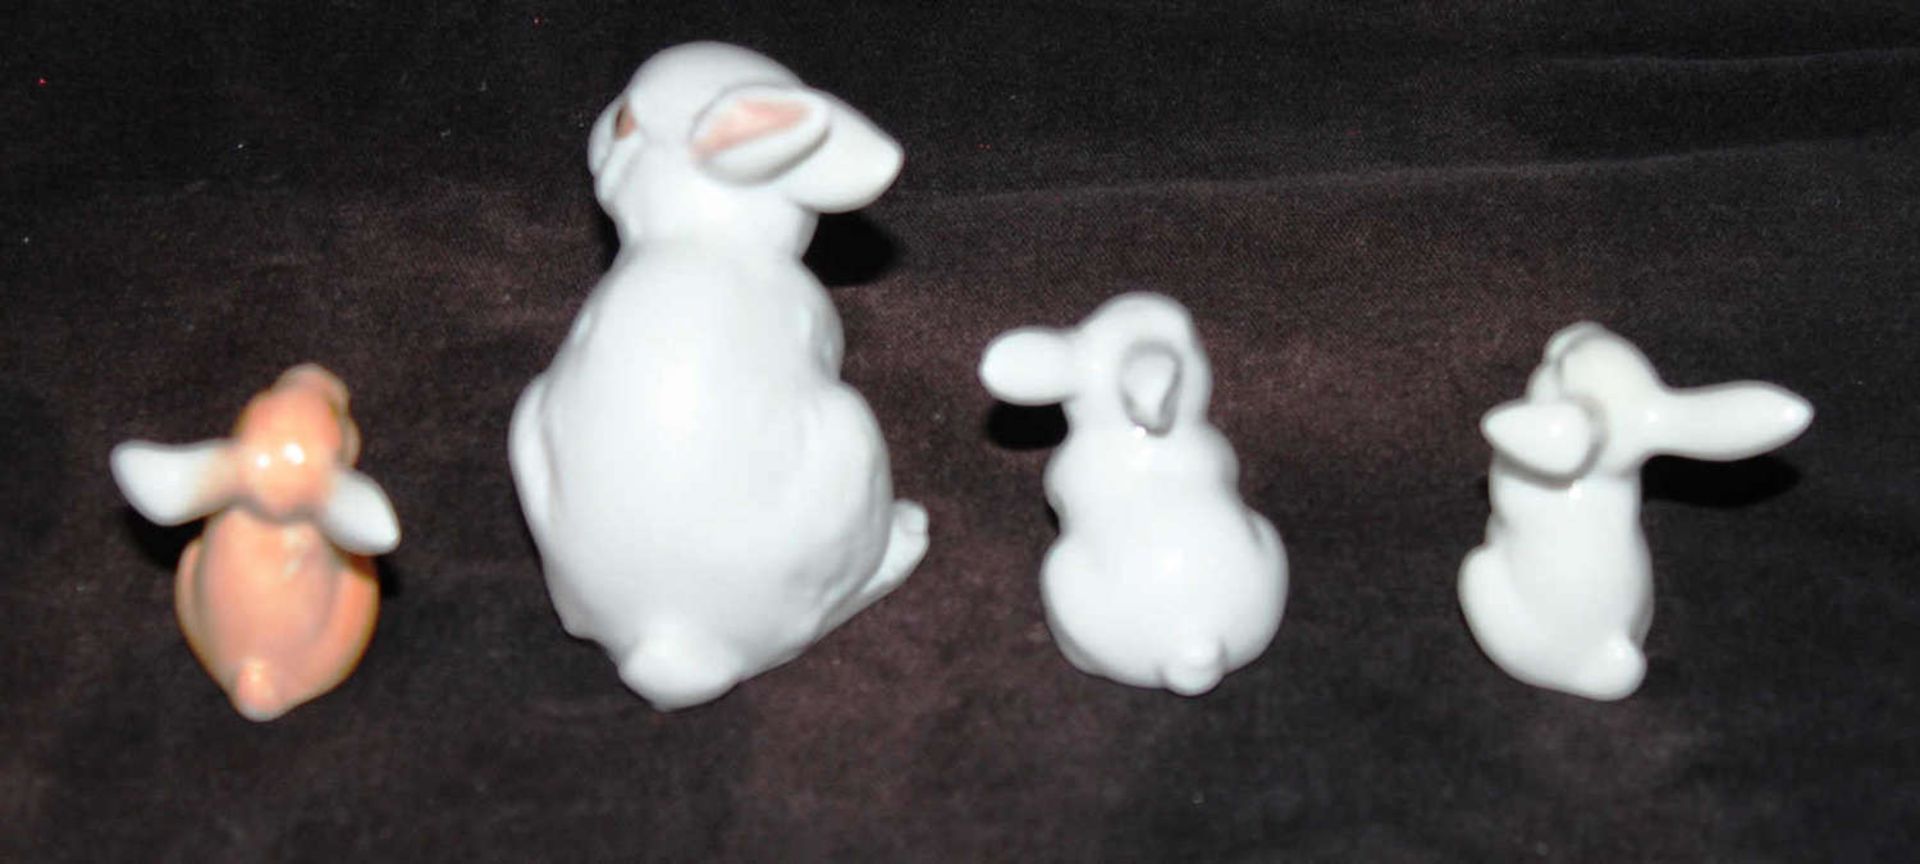 Rosenthal, 3 Porzellan Hasen, 2x Weissporzellan, 1x farbig lasiert, sowie 1 kleiner Hase, - Bild 2 aus 3